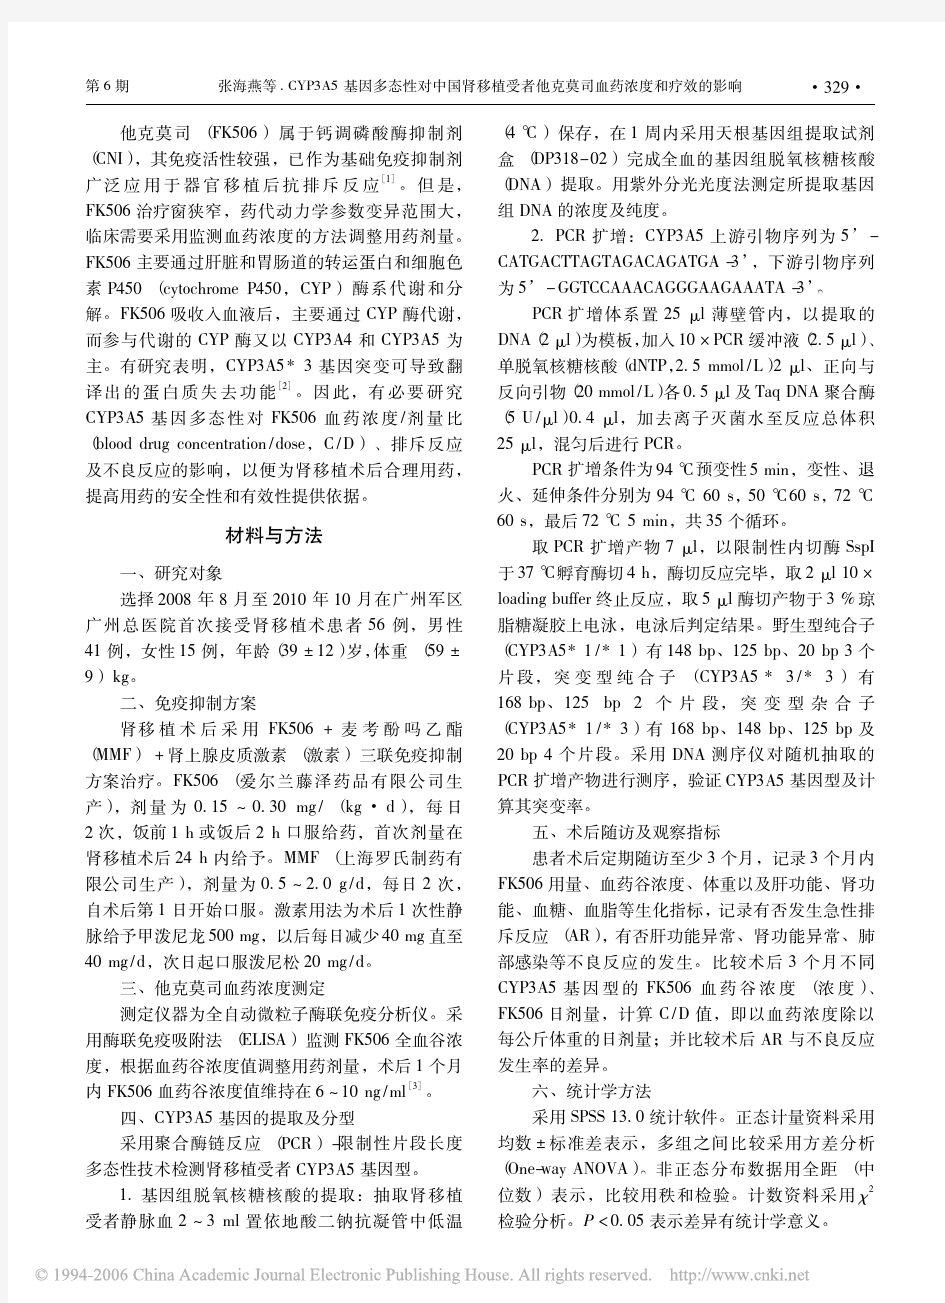 CYP3A5基因多态性对中国肾移植受者他克莫司血药浓度和疗效的影响